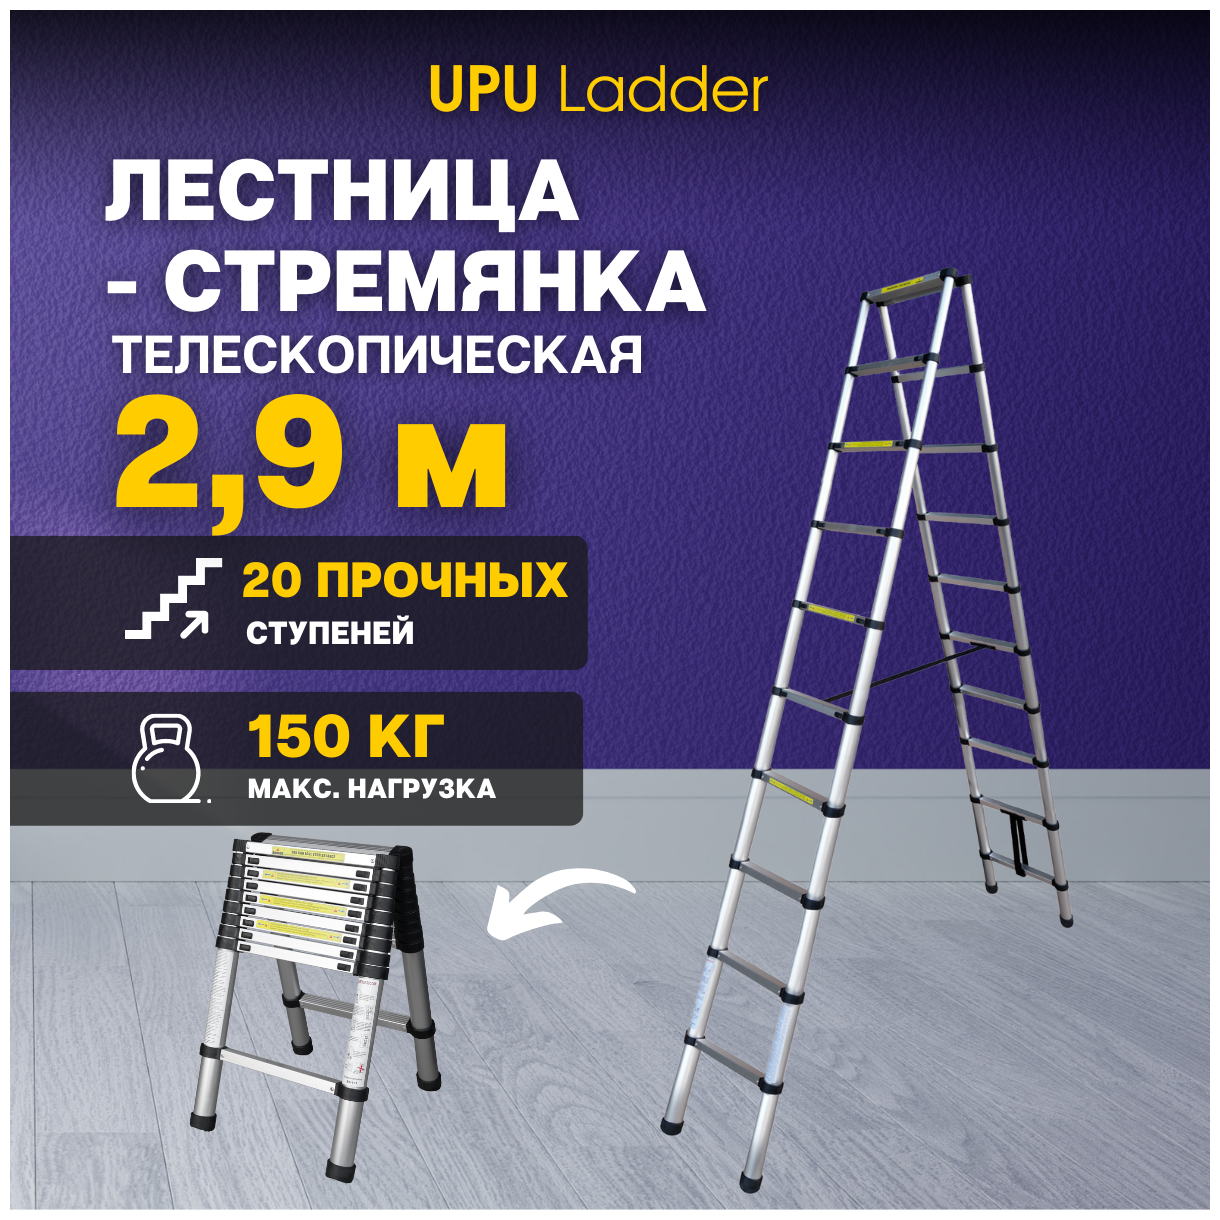 Стремянка телескопическая UPU Ladder UPT509 2,9 м